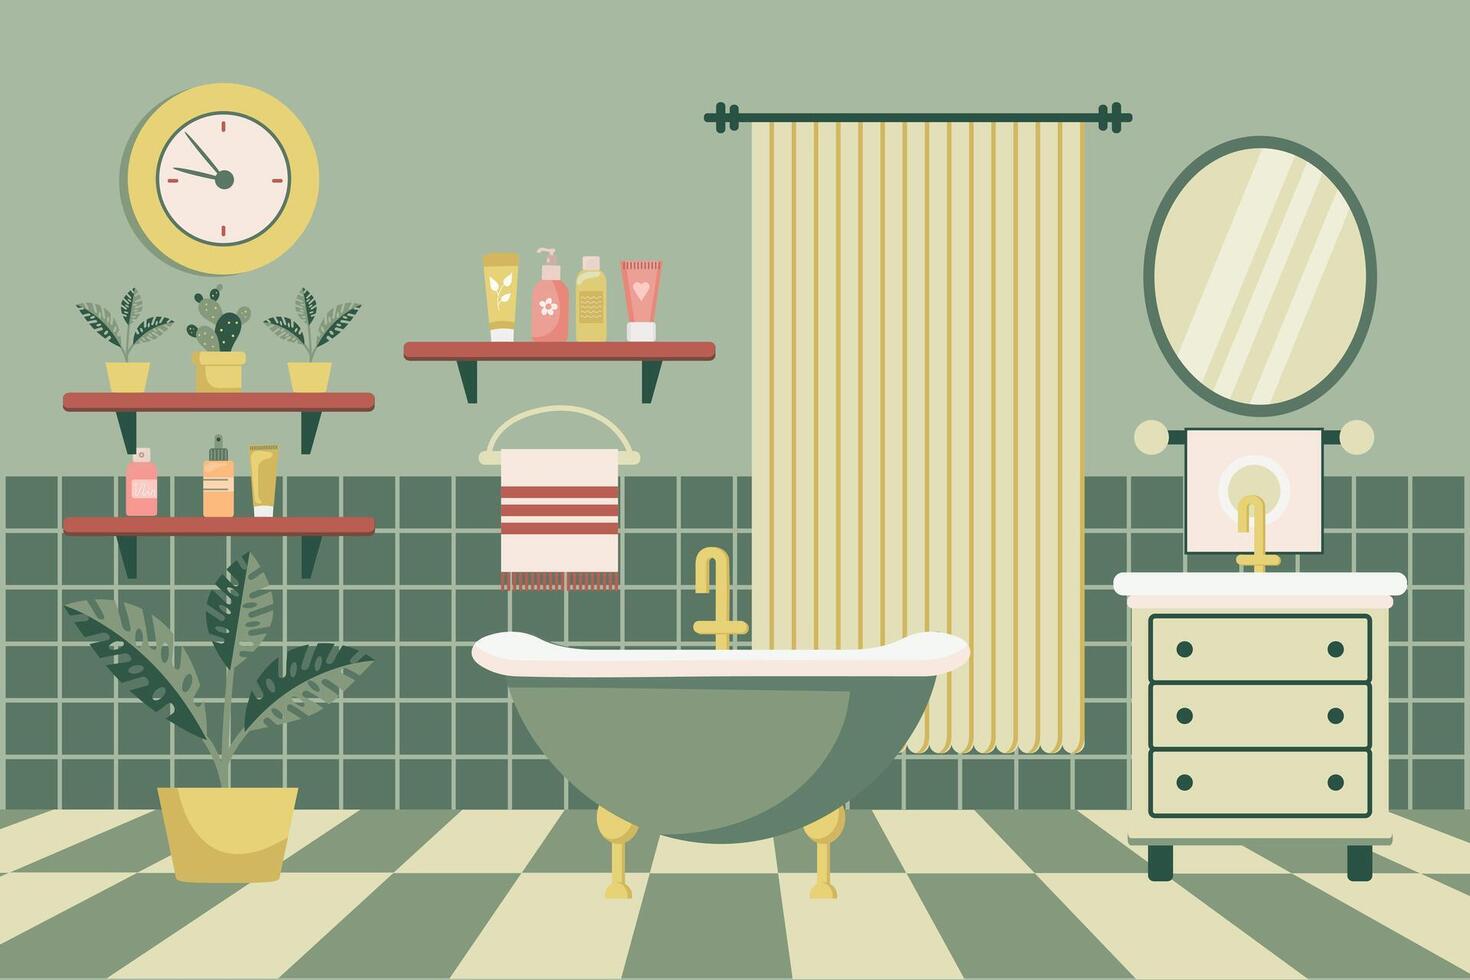 acolhedor banheiro. banheiro interior com banheiro mobília, banheira, lavatório, toalhas, espelho, janela, casa plantas. plano ilustração. vetor